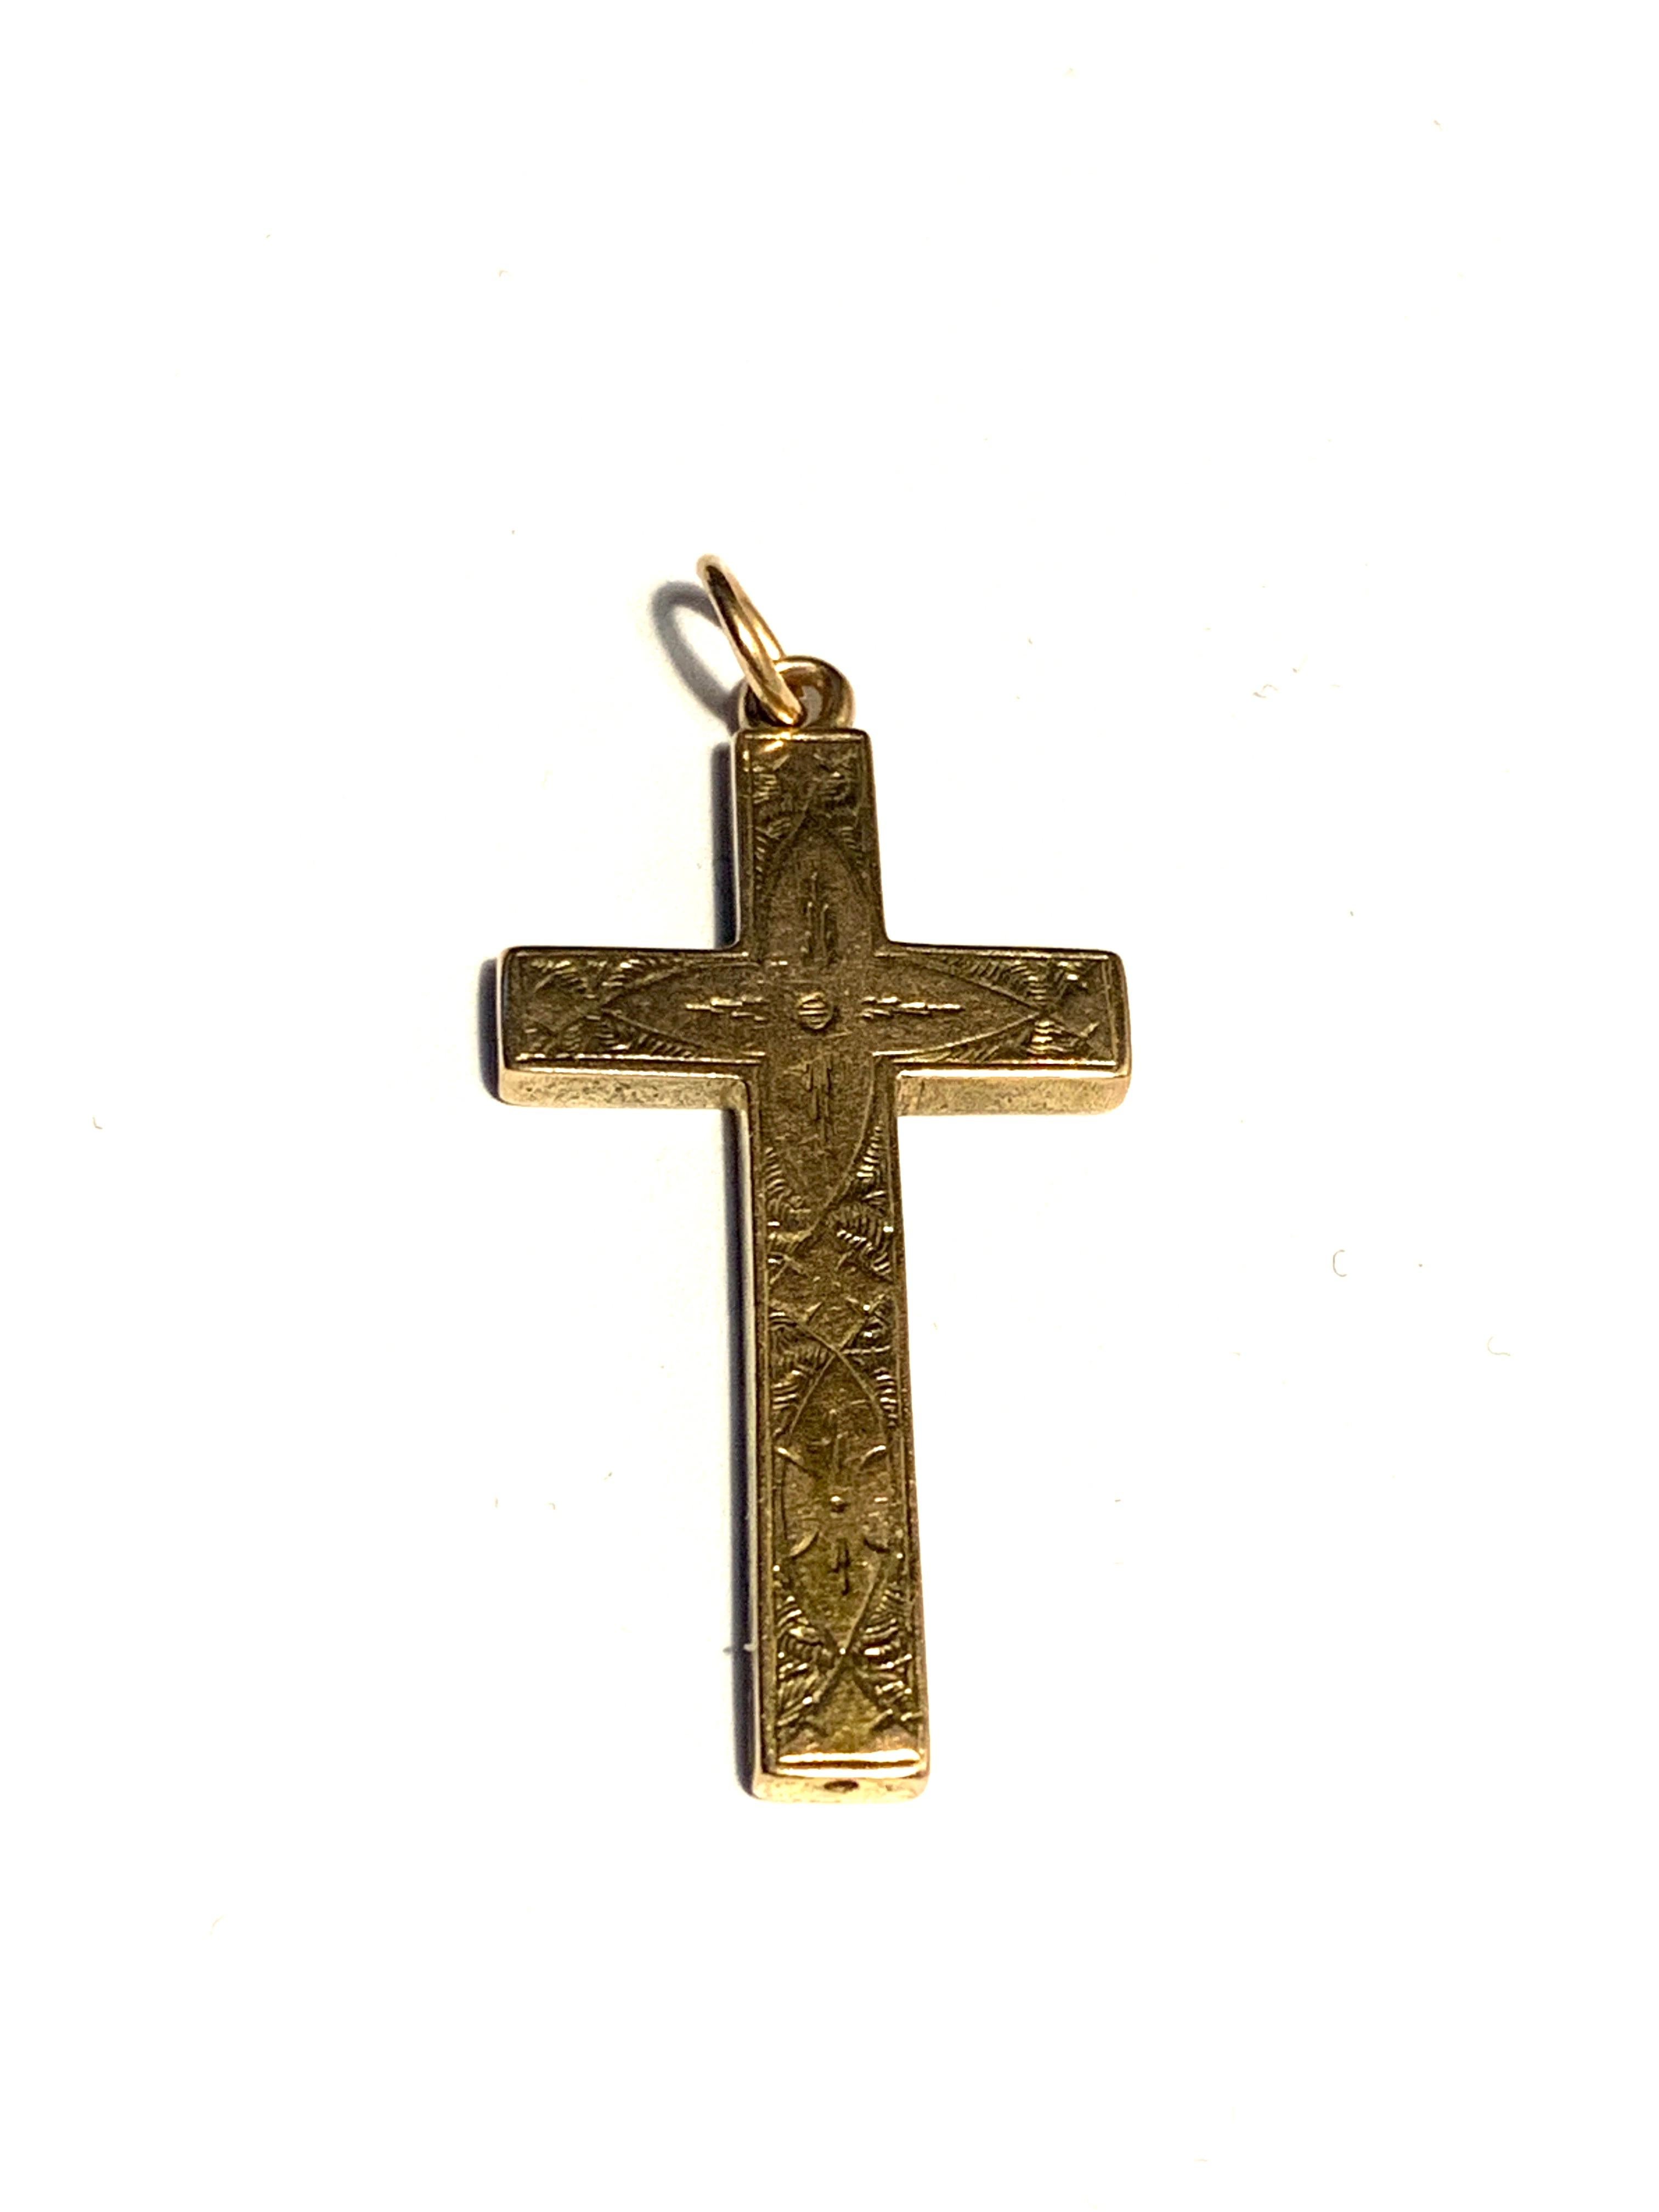 Croix antique en or 15ct
avec décoration de style feuillage gravée à la main
Circa 1845 - milieu de la période victorienne
Taille      3.5 cm x 2 cm
Poids  1.86 grammes